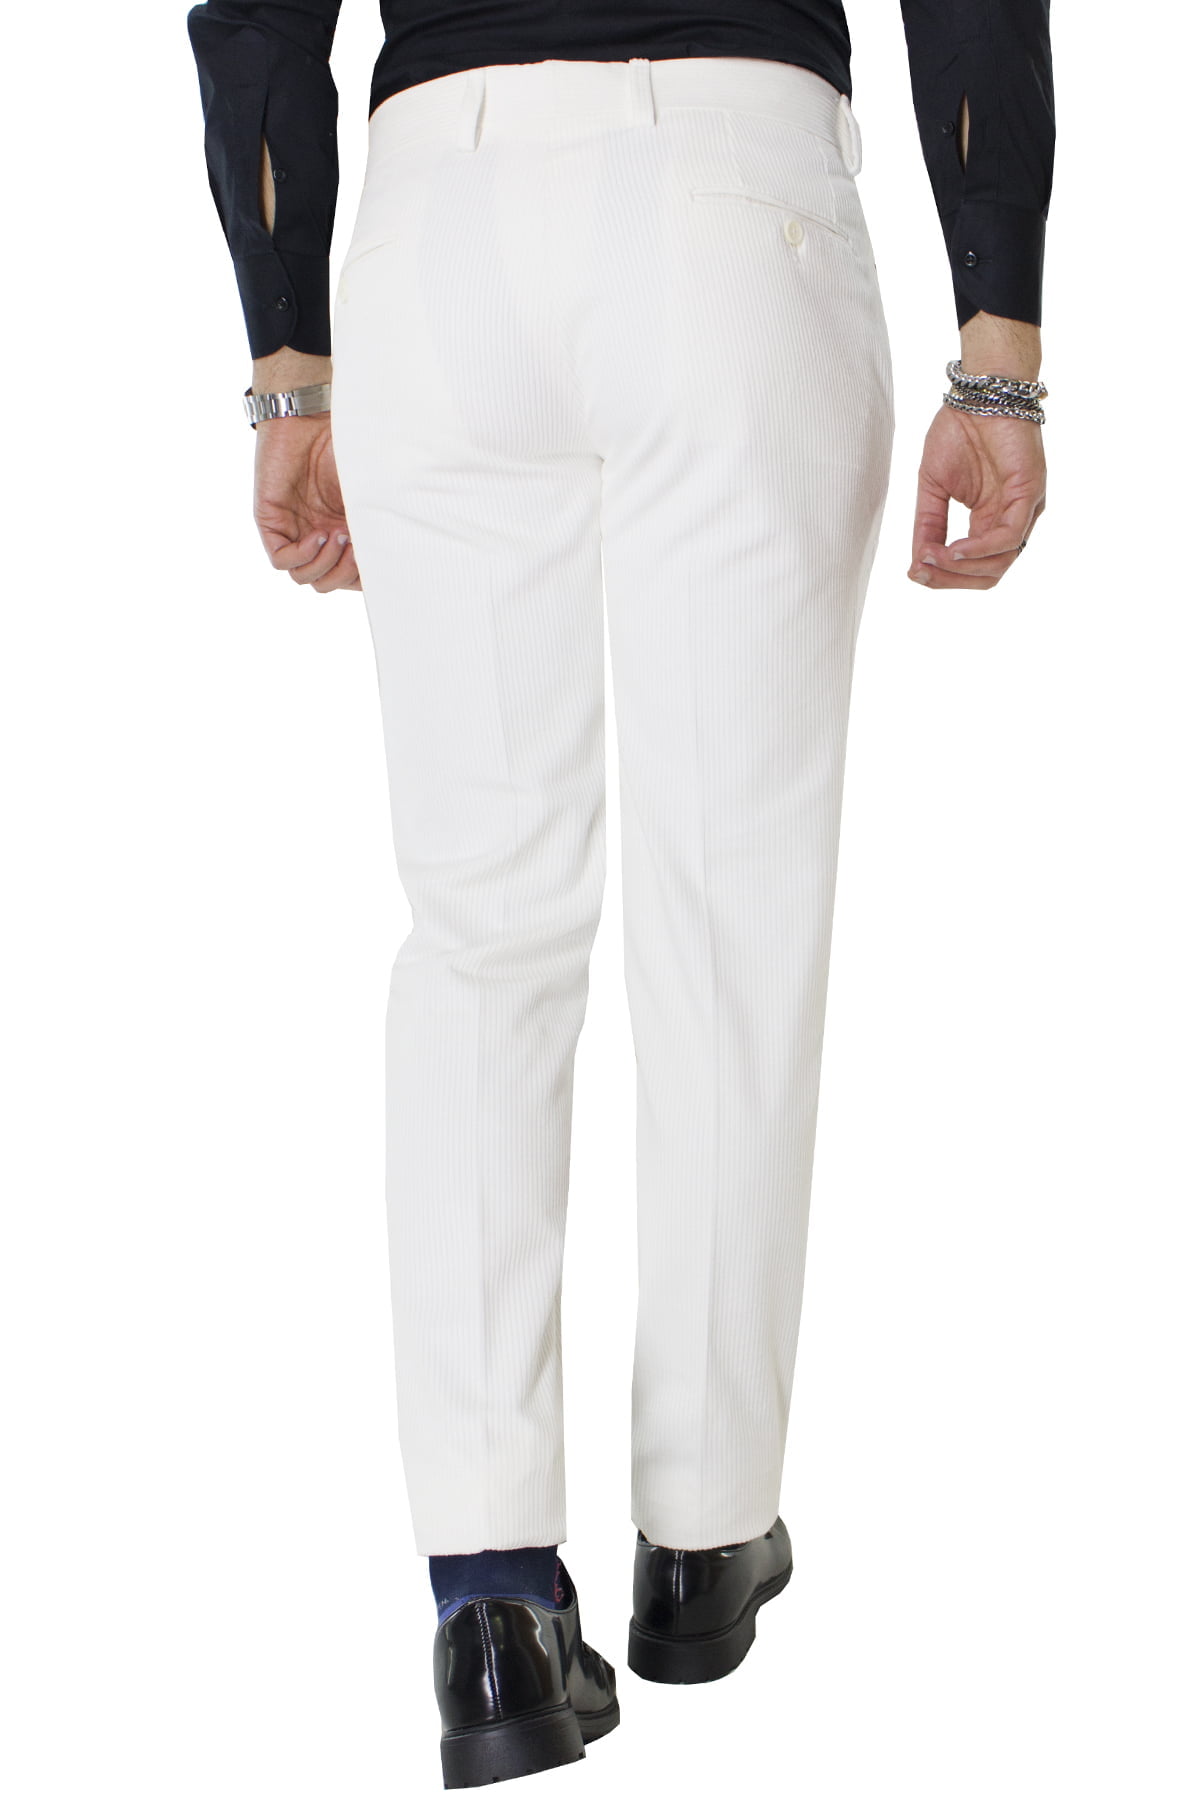 Pantalone uomo bianco in velluto a coste strette con tasche america orlo naturale